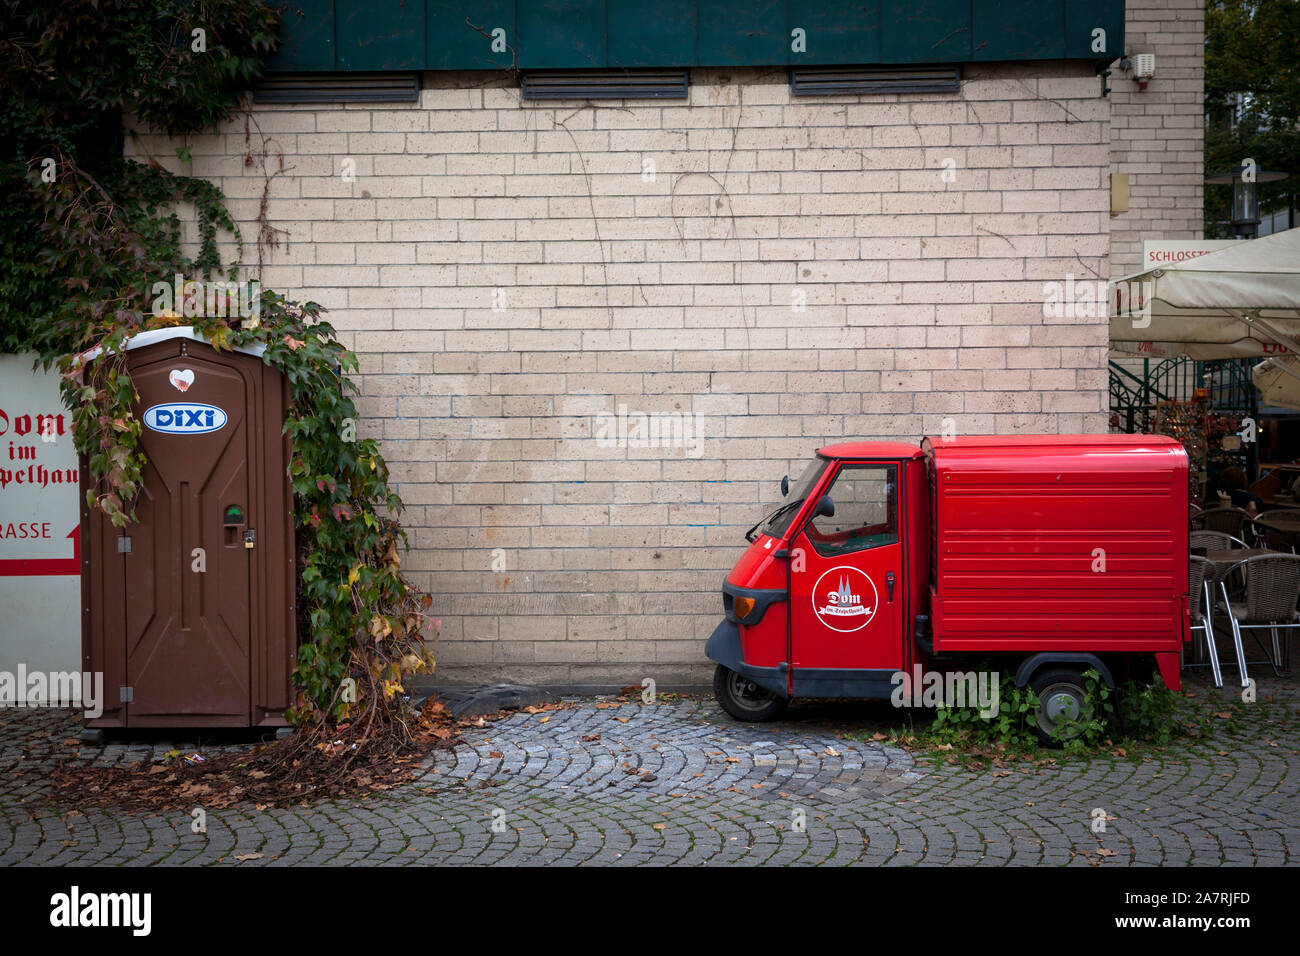 Dixi portátil wc y un Piaggio Ape vehículo comercial ligero en la parte vieja de la ciudad, Colonia, Alemania. Dixi Klo und Piaggio Ape Kleintranspor Foto de stock